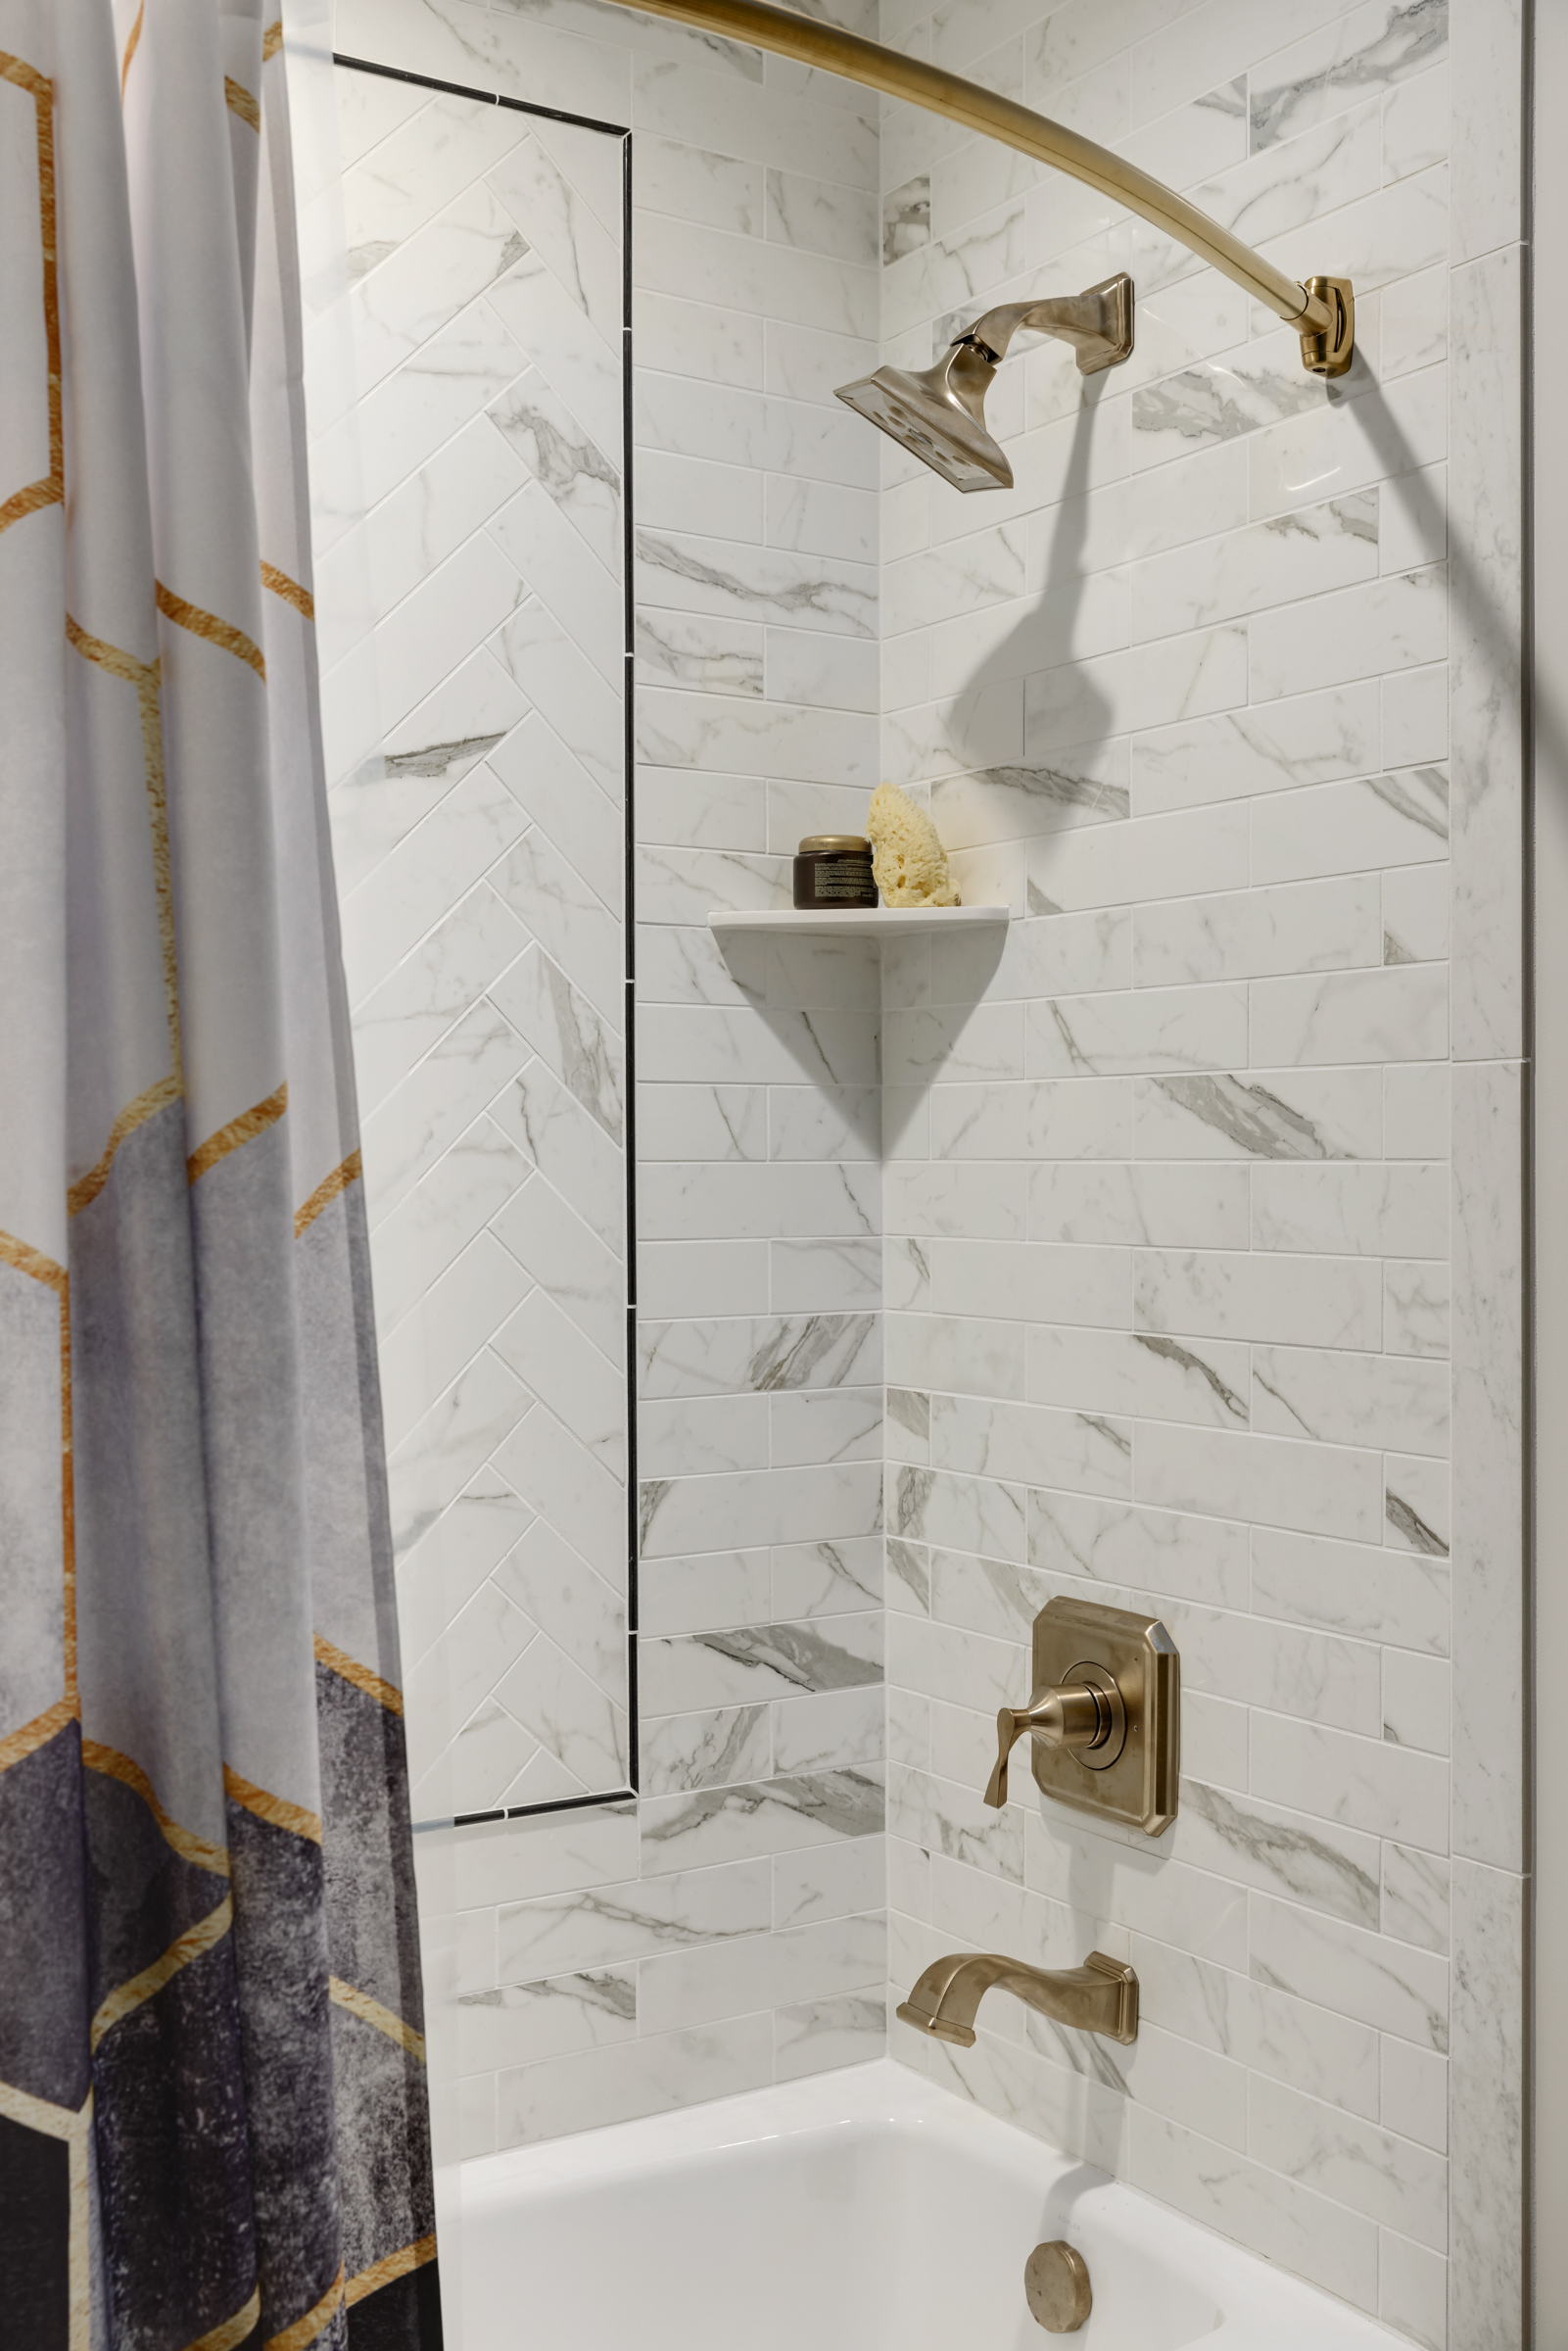 Guest Bathroom remodel with dark hexagon floor tile, wooden vanity, and gold fixtures